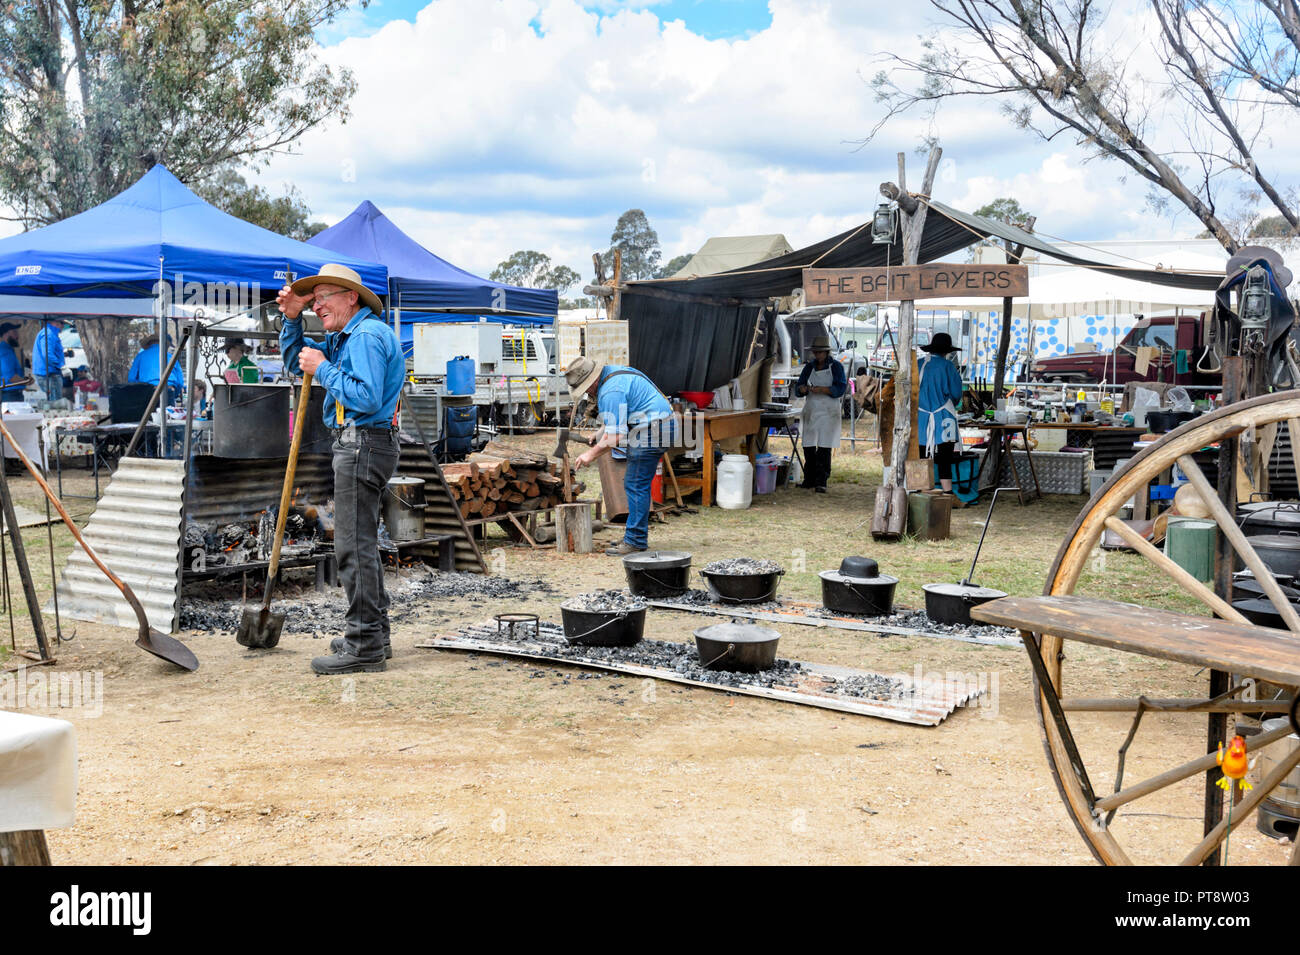 Concorso di cucina presso l'Australian Camp forno Festival 2018, Millmerran, nei pressi di Toowoomba, Sud del Queensland, QLD, Australia Foto Stock